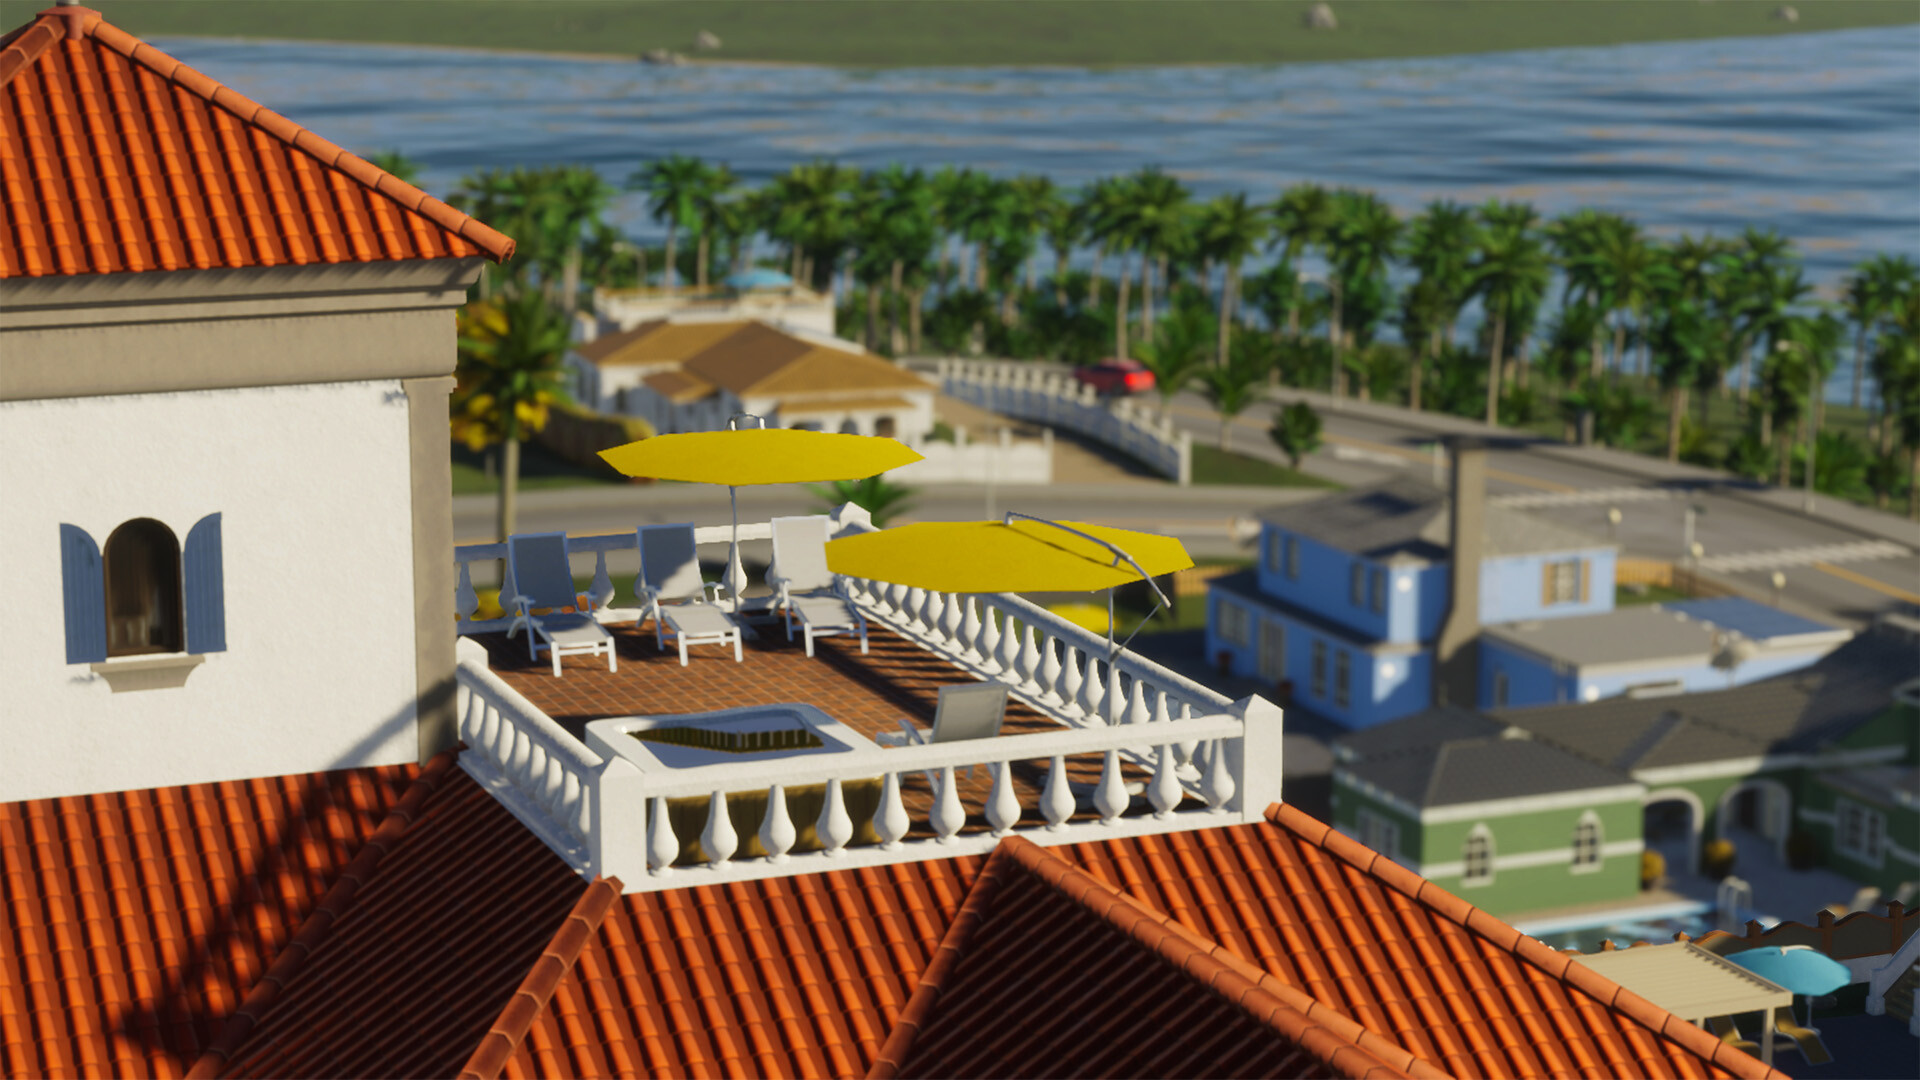 La stratégie d'urbanisme Cities : Skylines 2 a reçu un ensemble d'objets de plage et d'outils en jeu pour des modifications.